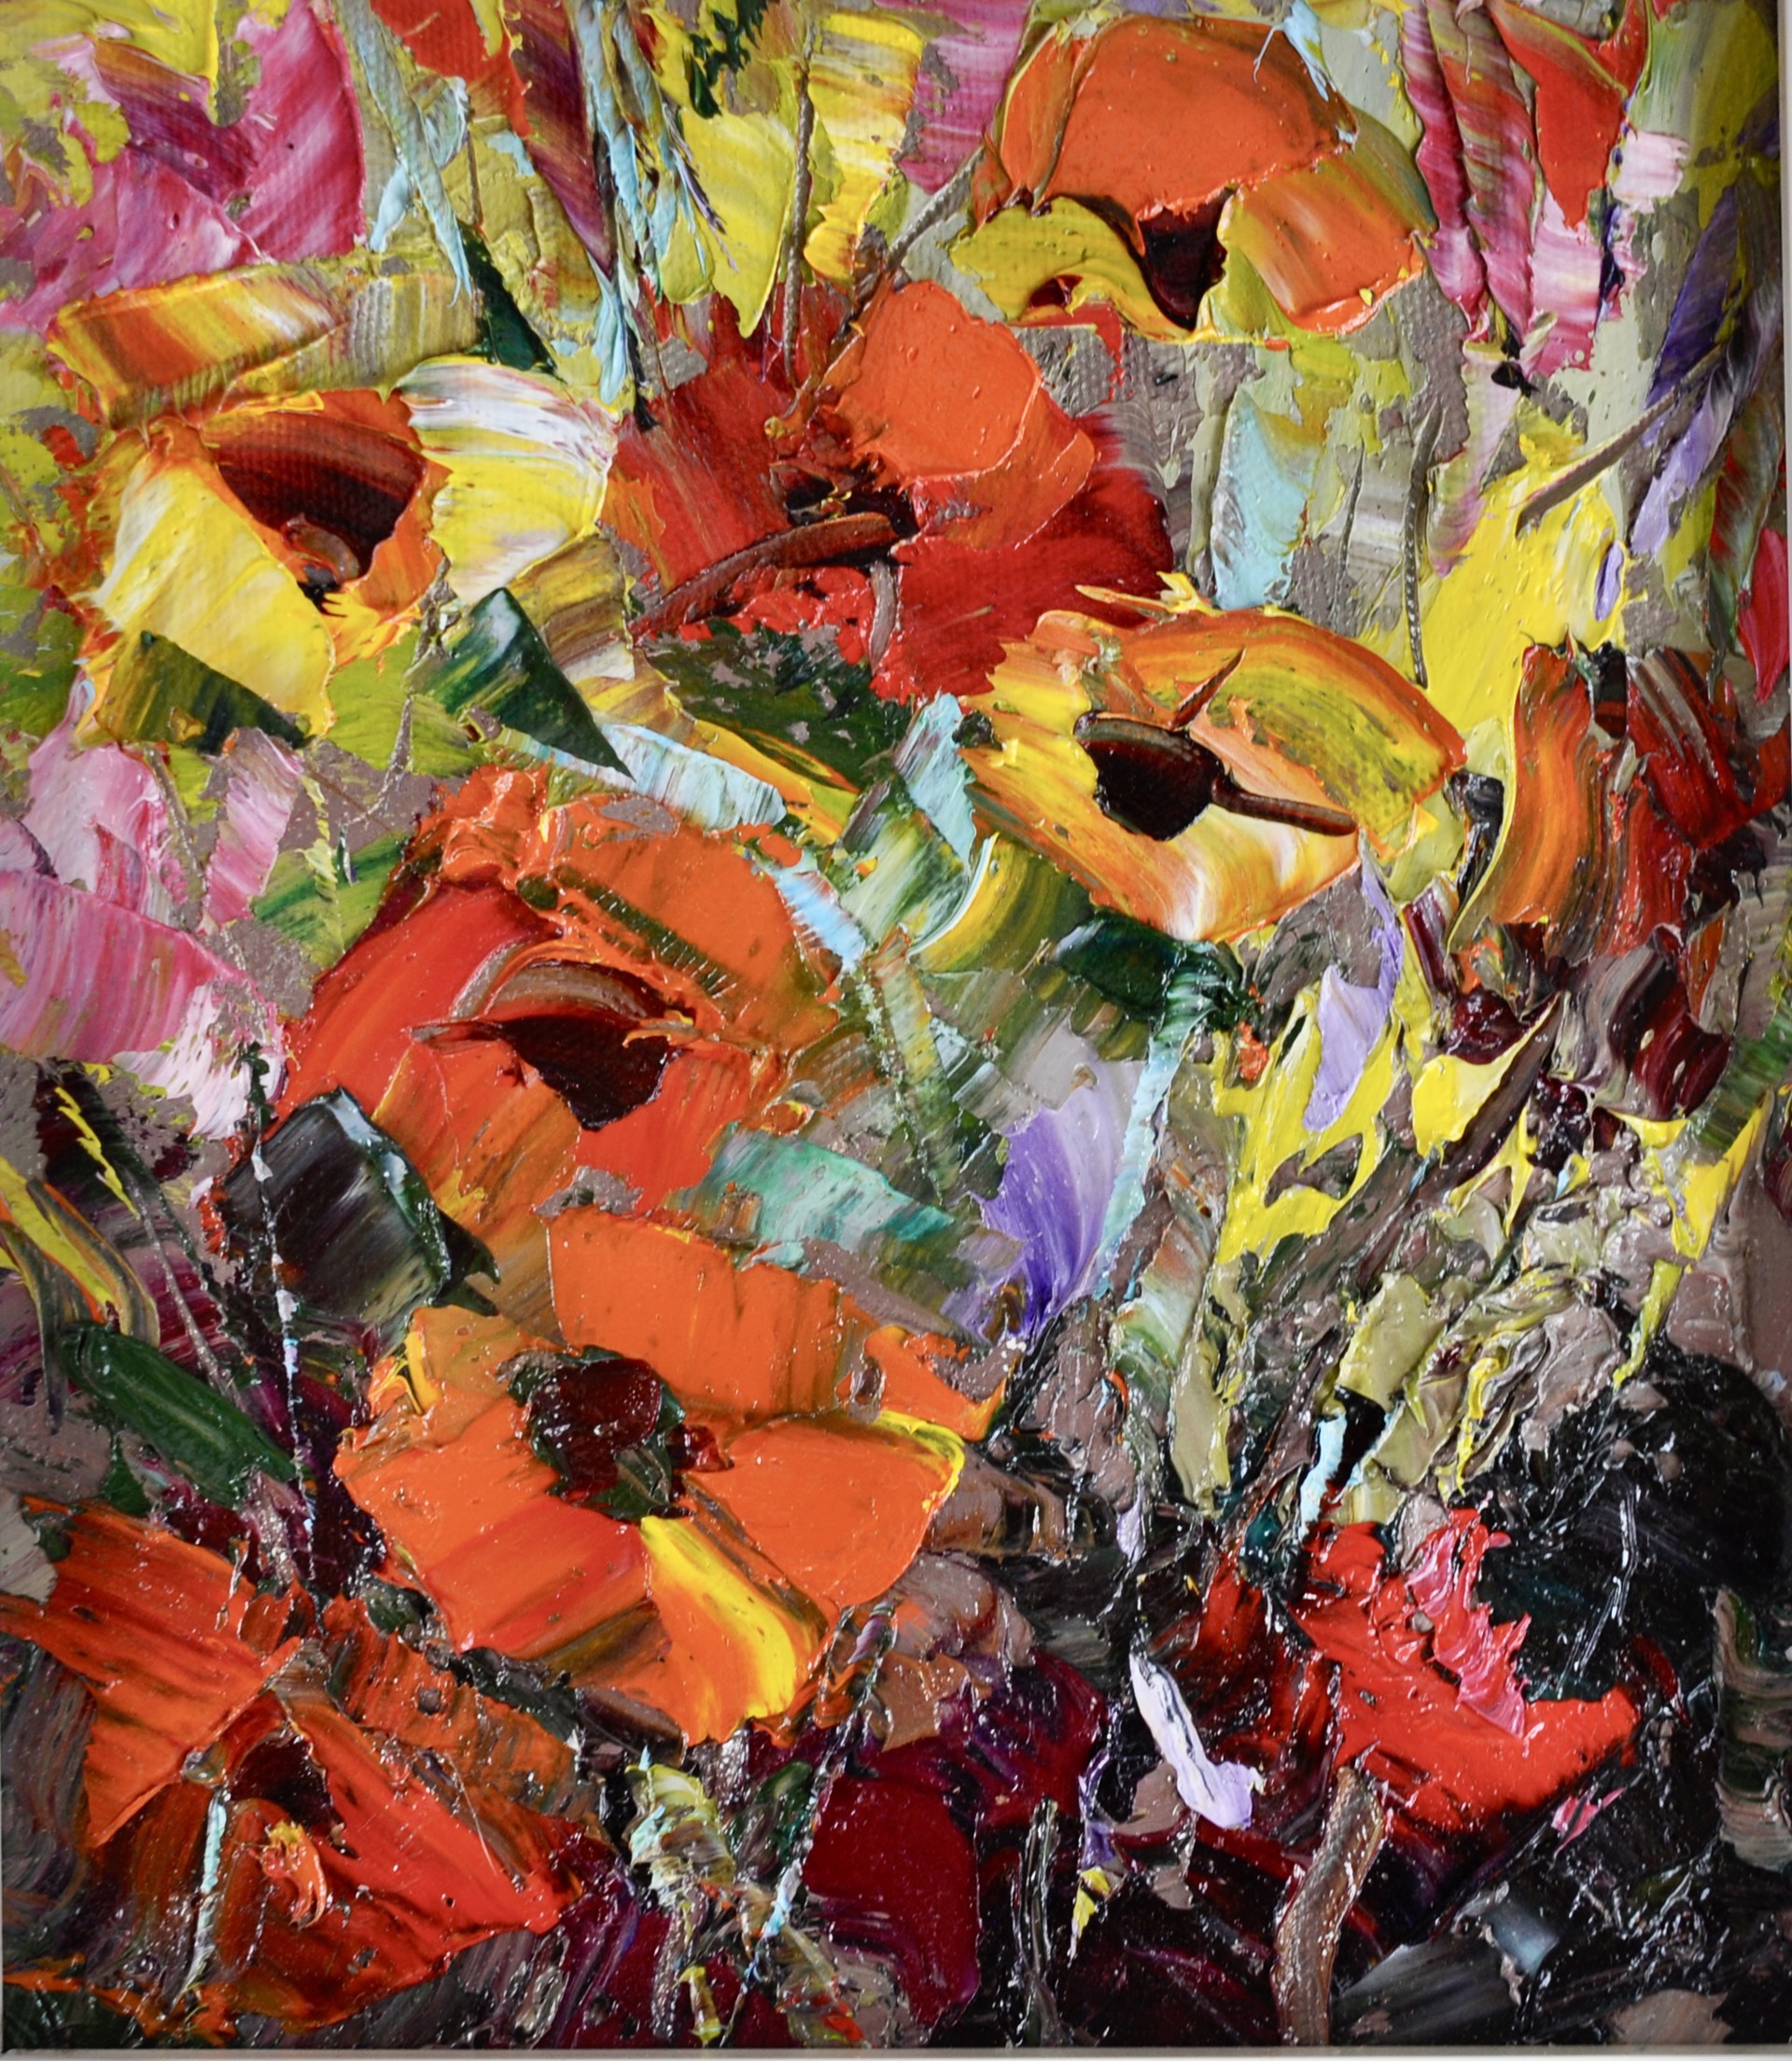 Flowers by Dean Bradshaw